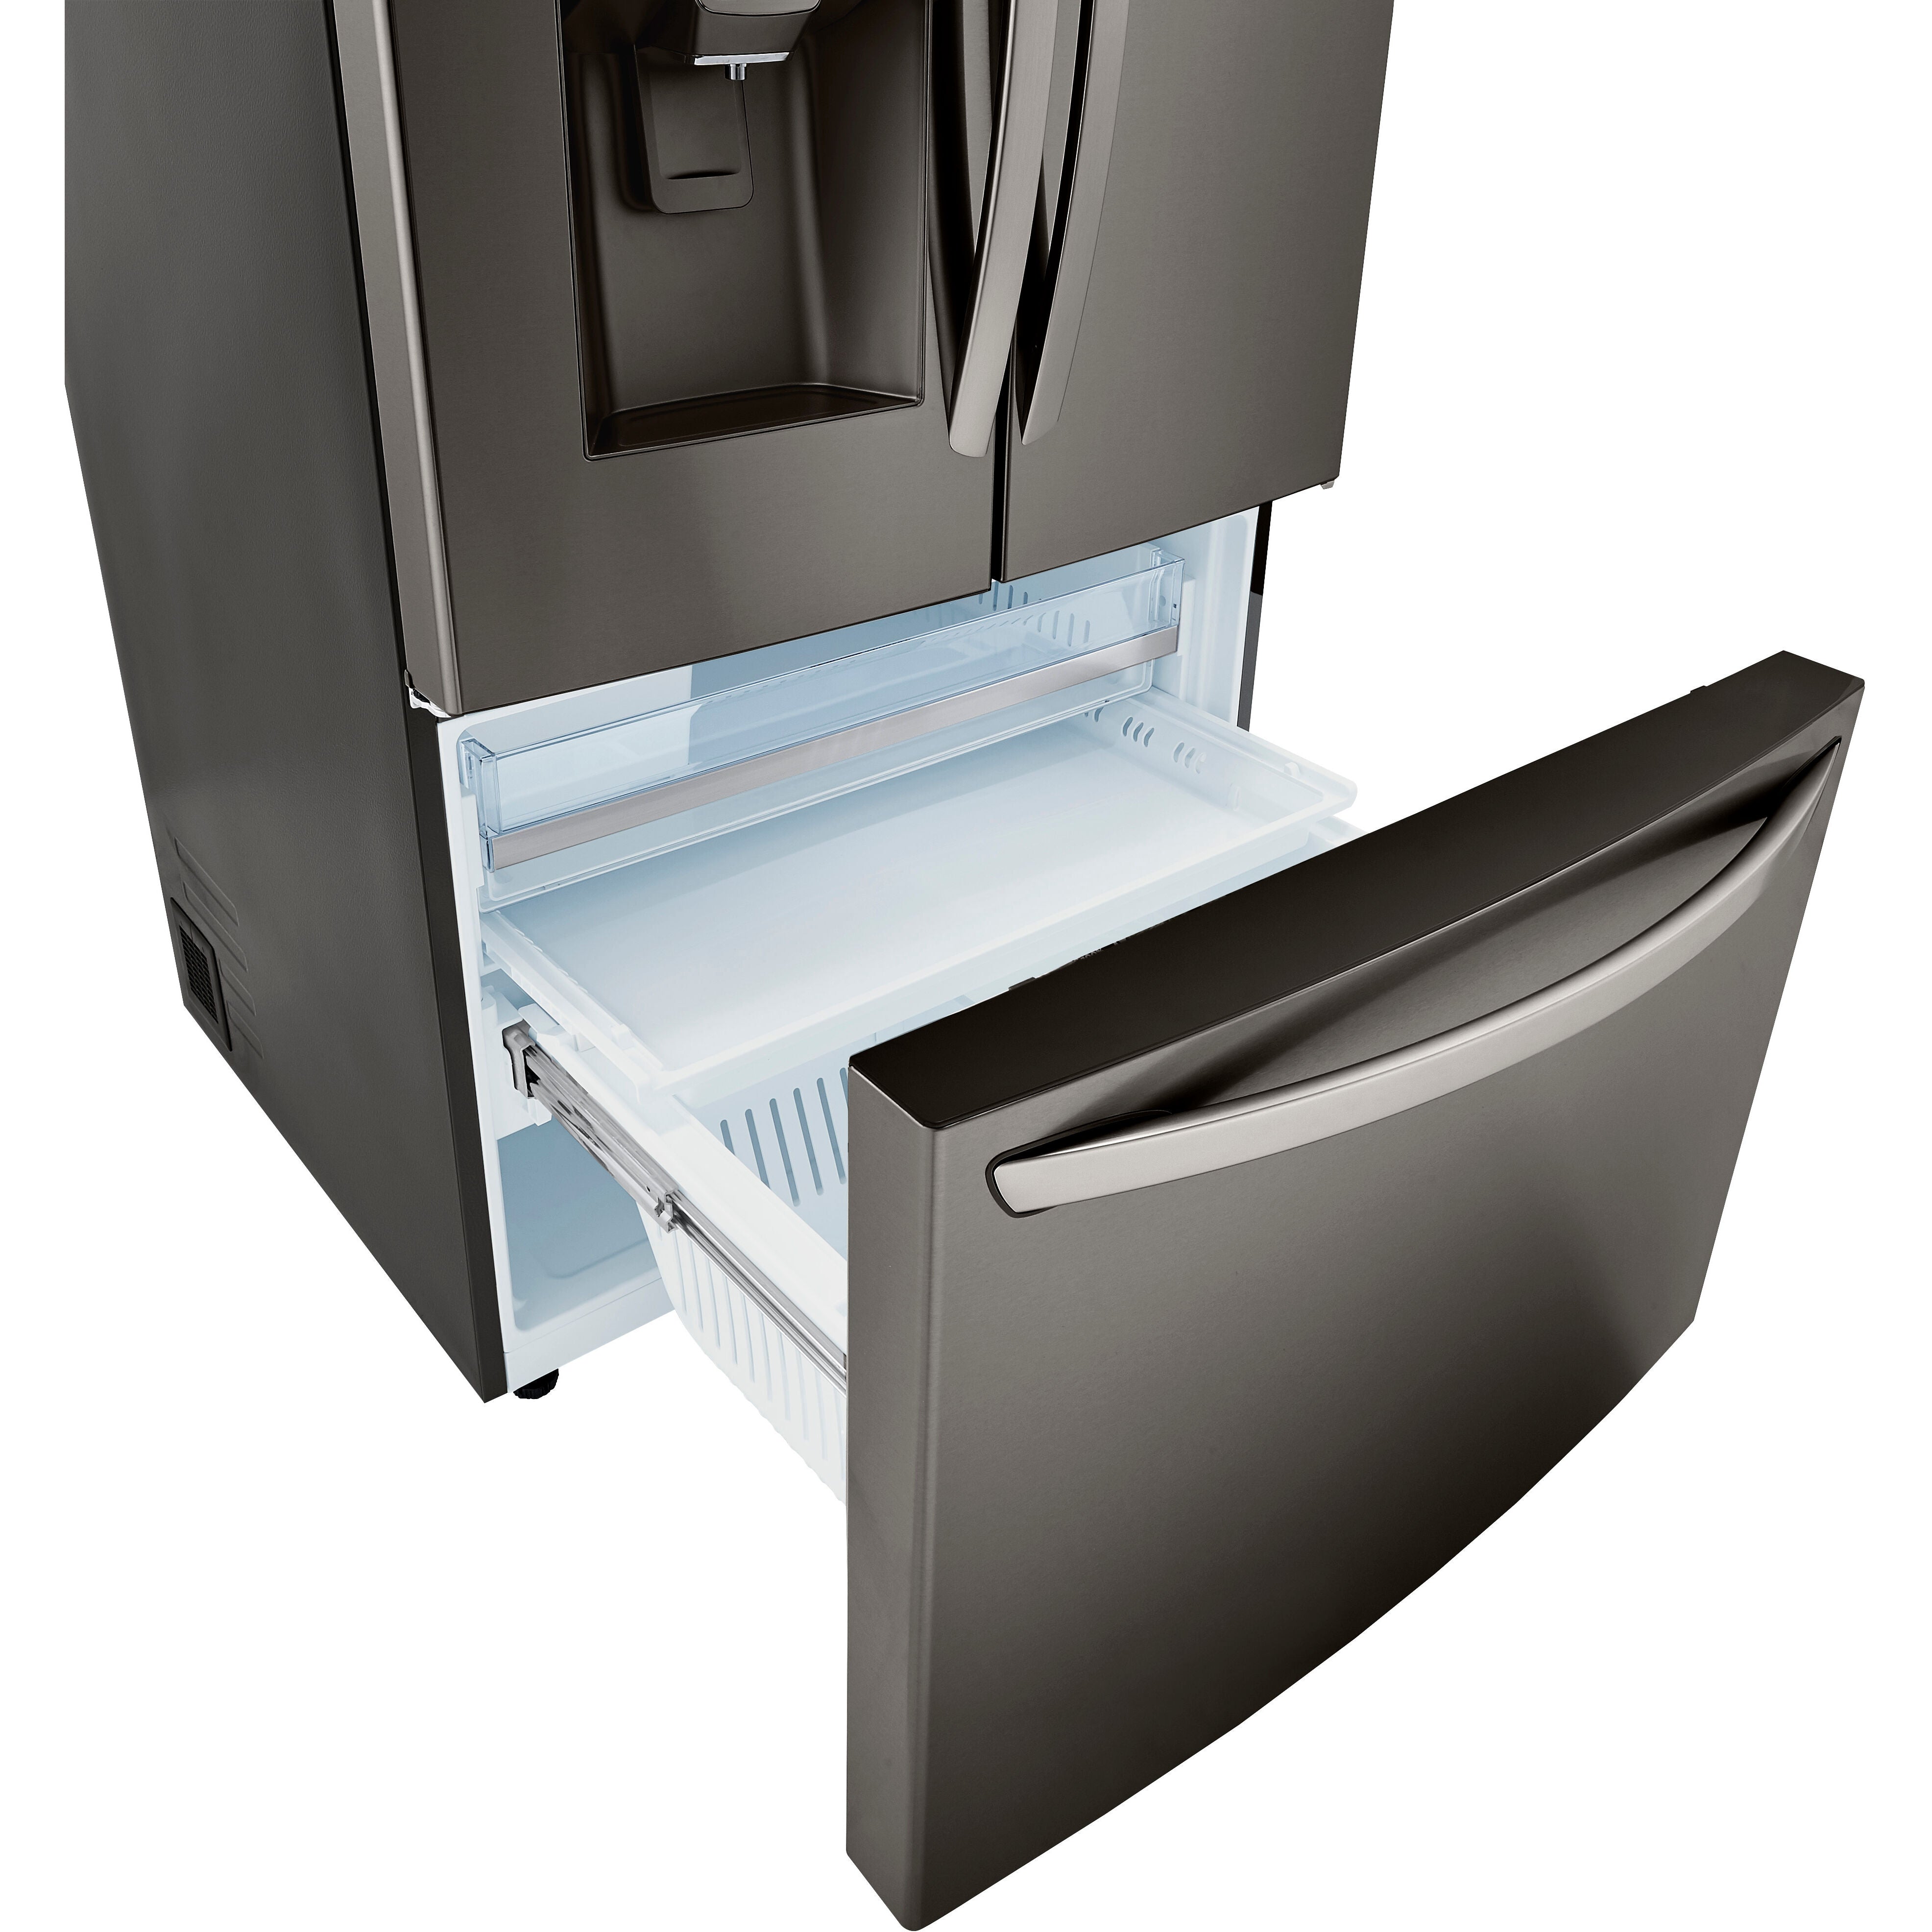 LG 36 Inch 3-Door French Door Refrigerator in Black Stainless Steel 24 Cu. Ft. (LRFDC2406D)